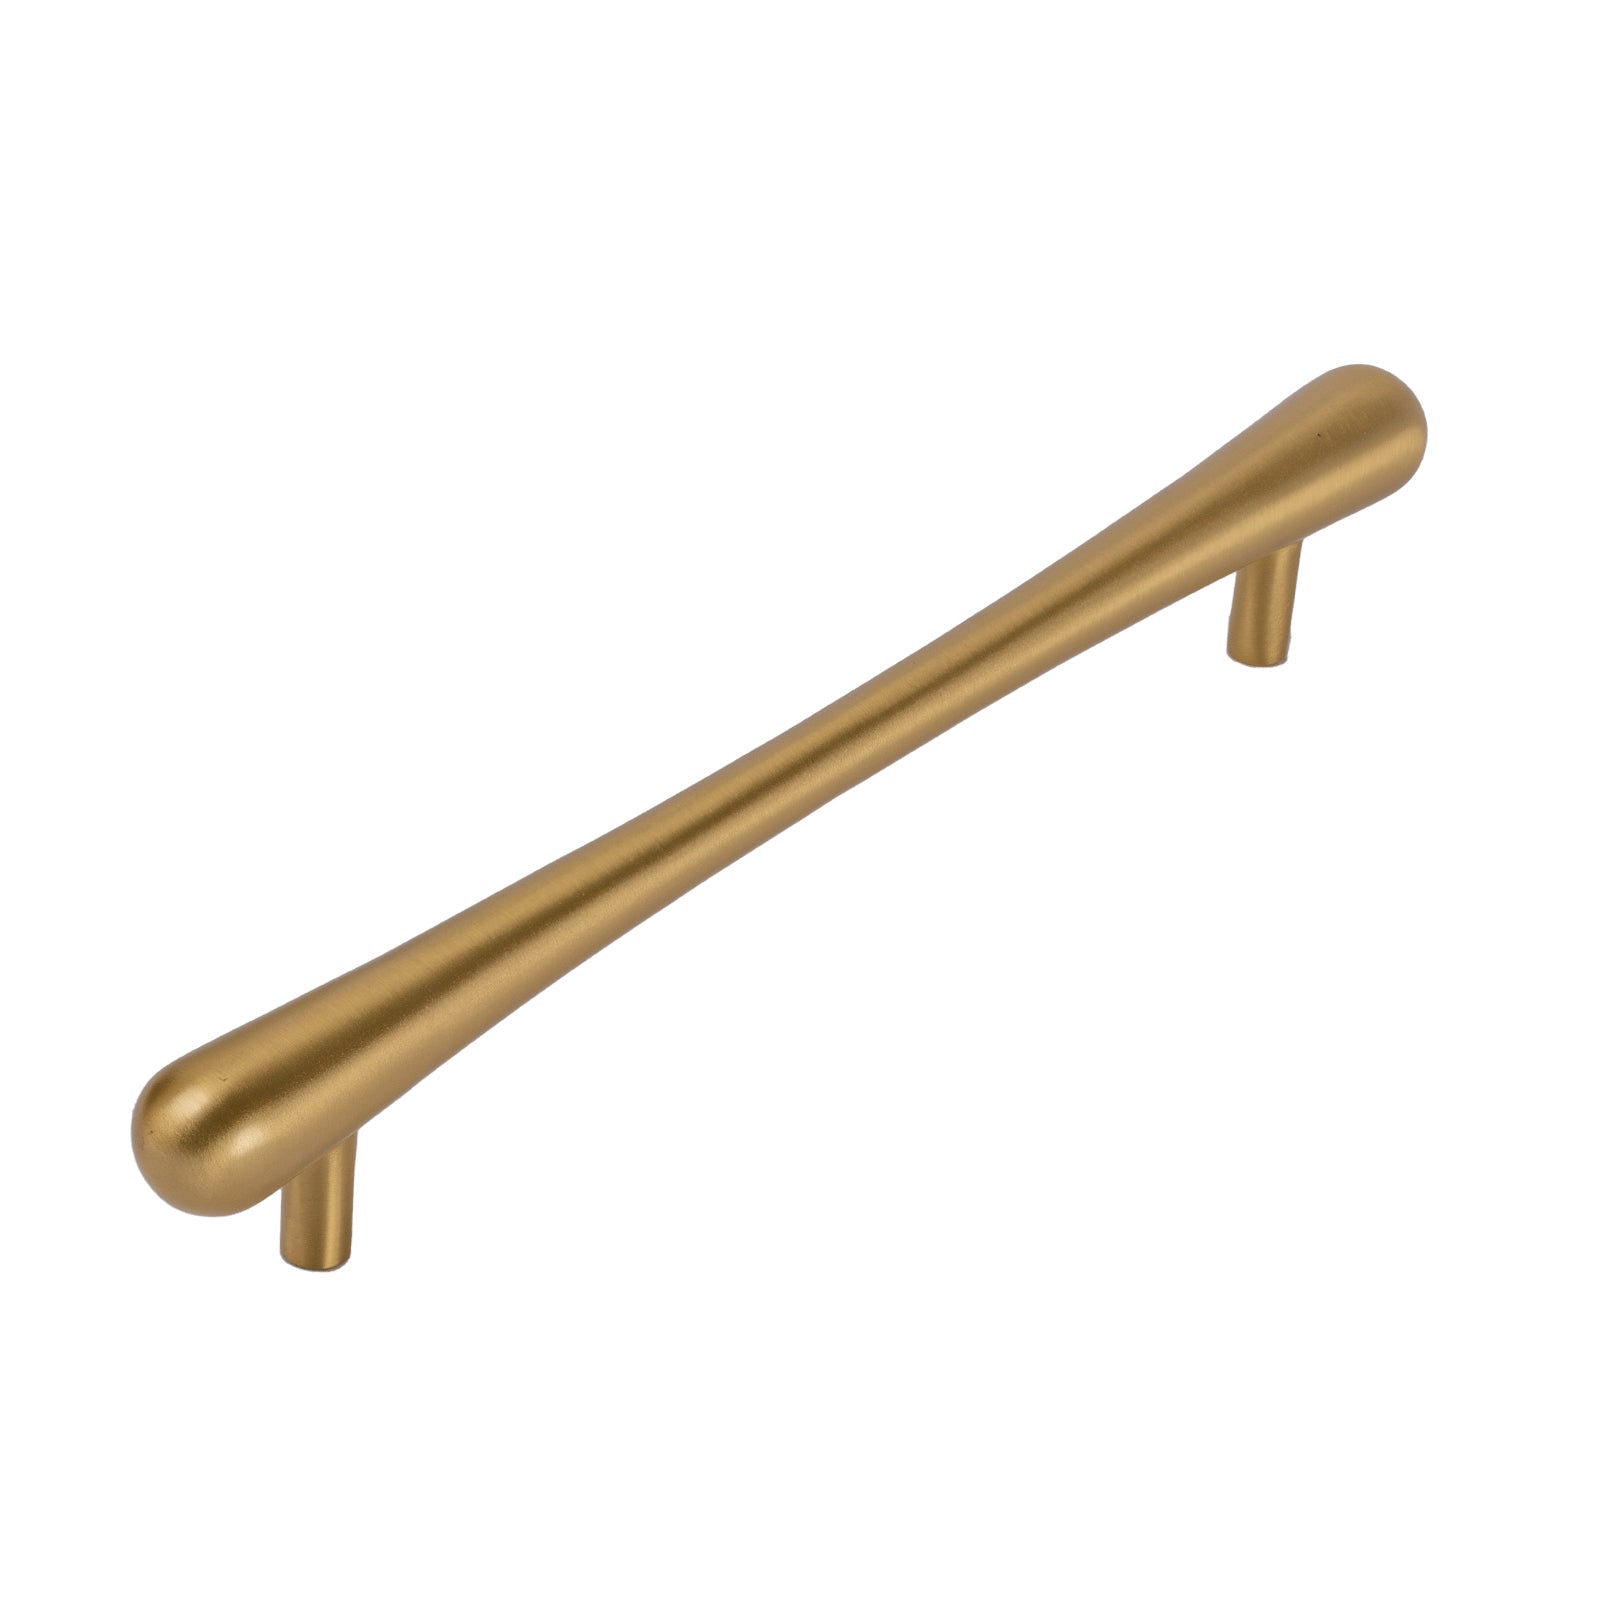 satin brass bar pull handles, kitchen cabinet handles